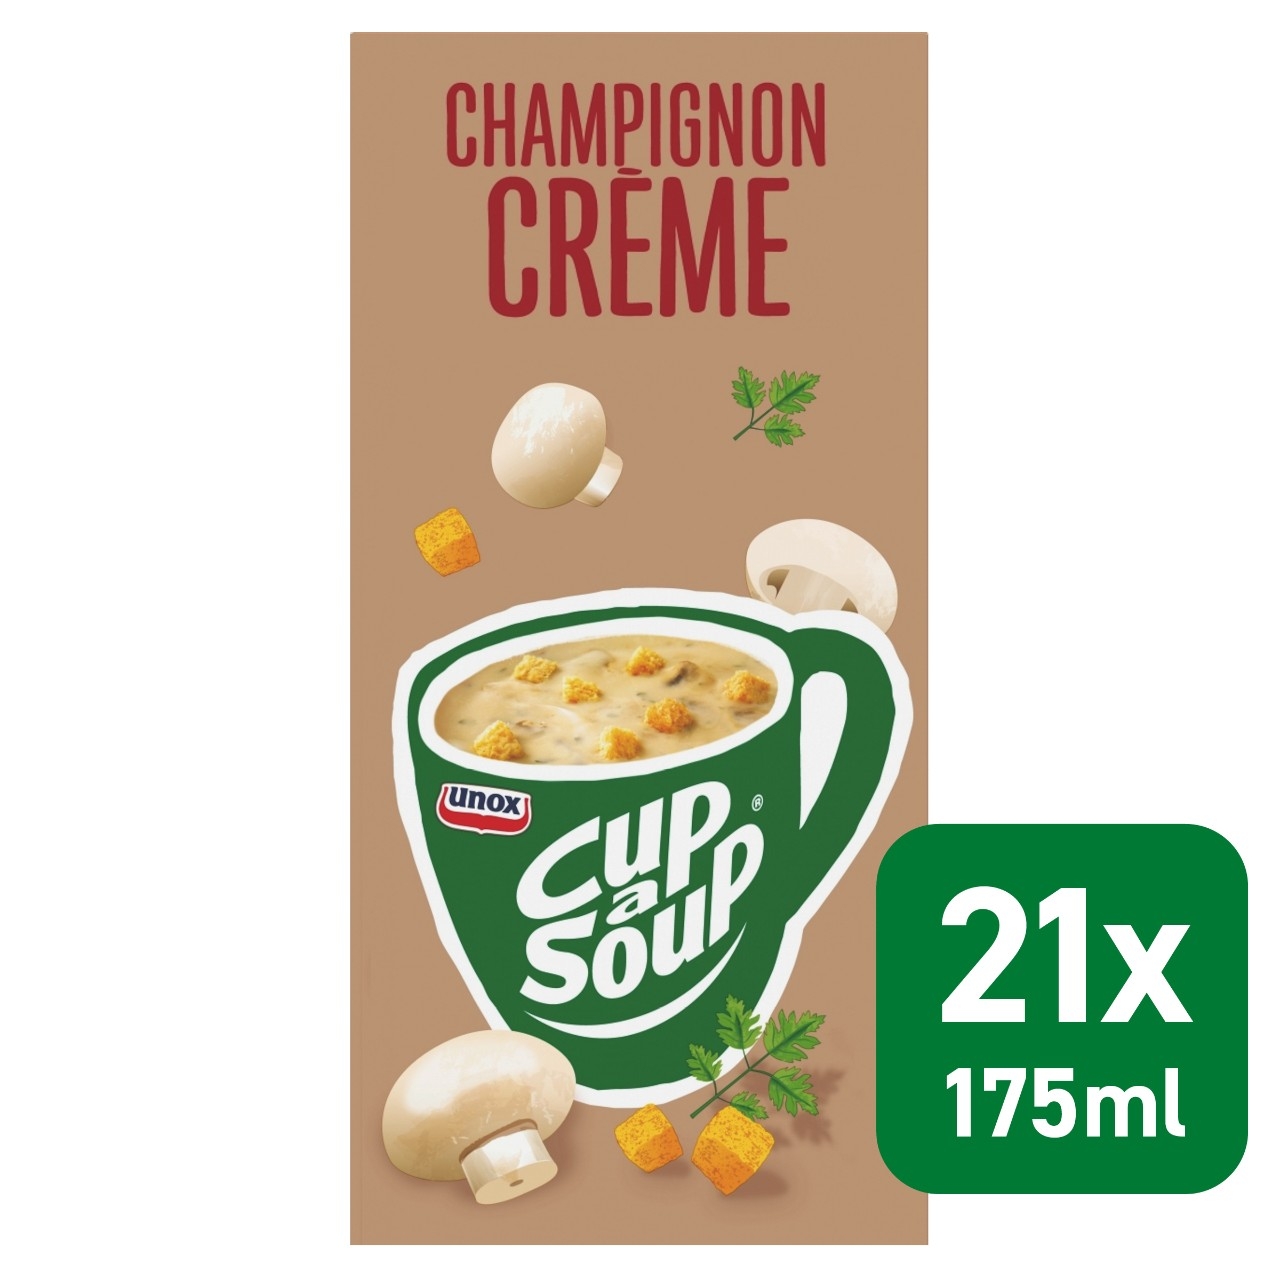 Cup a soup champignon creme 21 zakjes